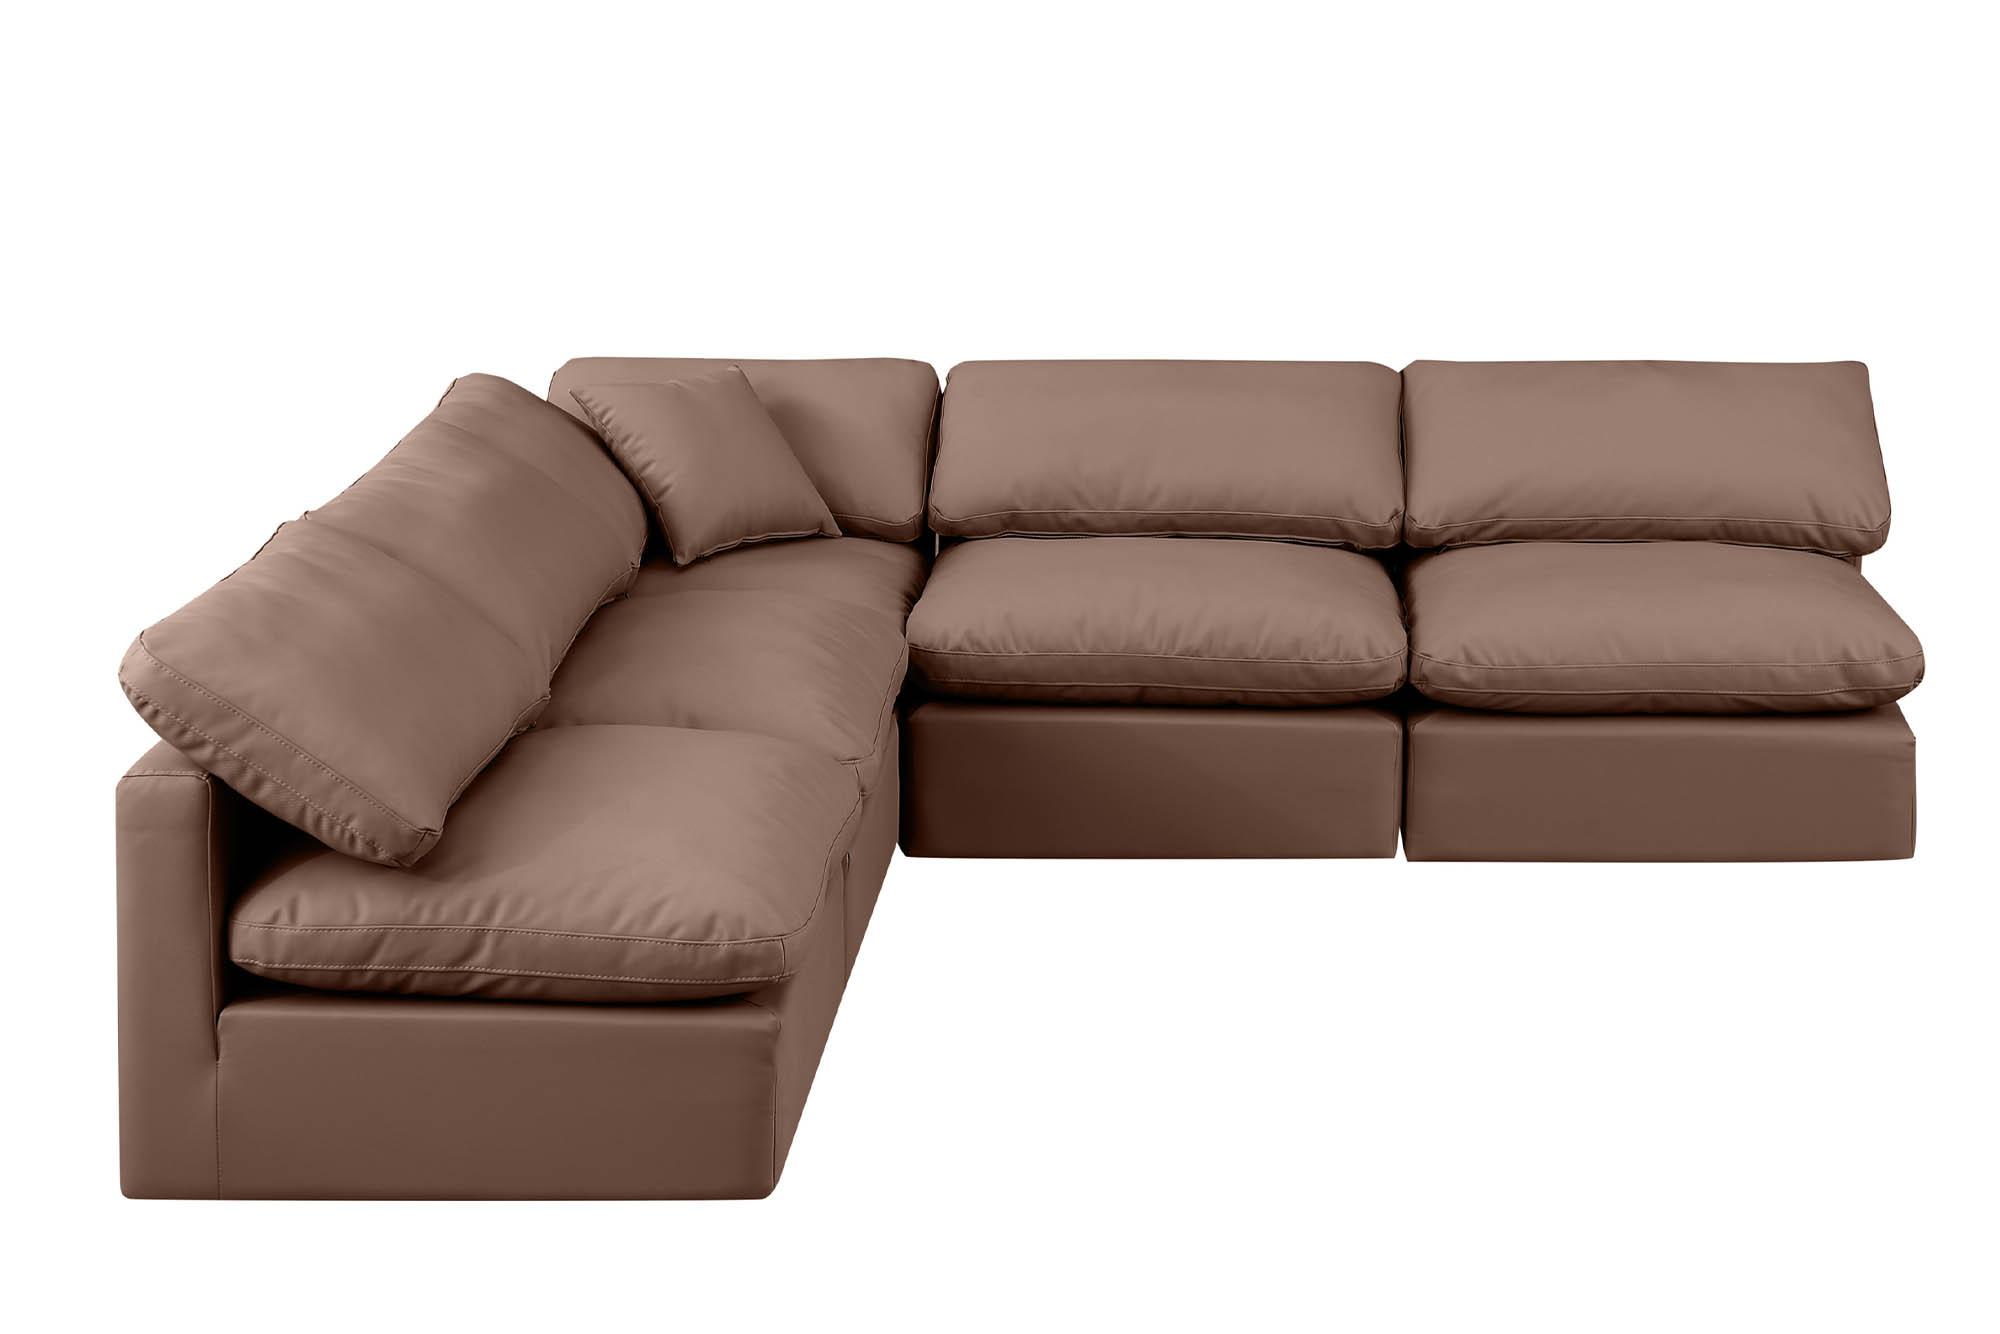 

    
Meridian Furniture INDULGE 146Brown-Sec5B Modular Sectional Sofa Brown 146Brown-Sec5B
